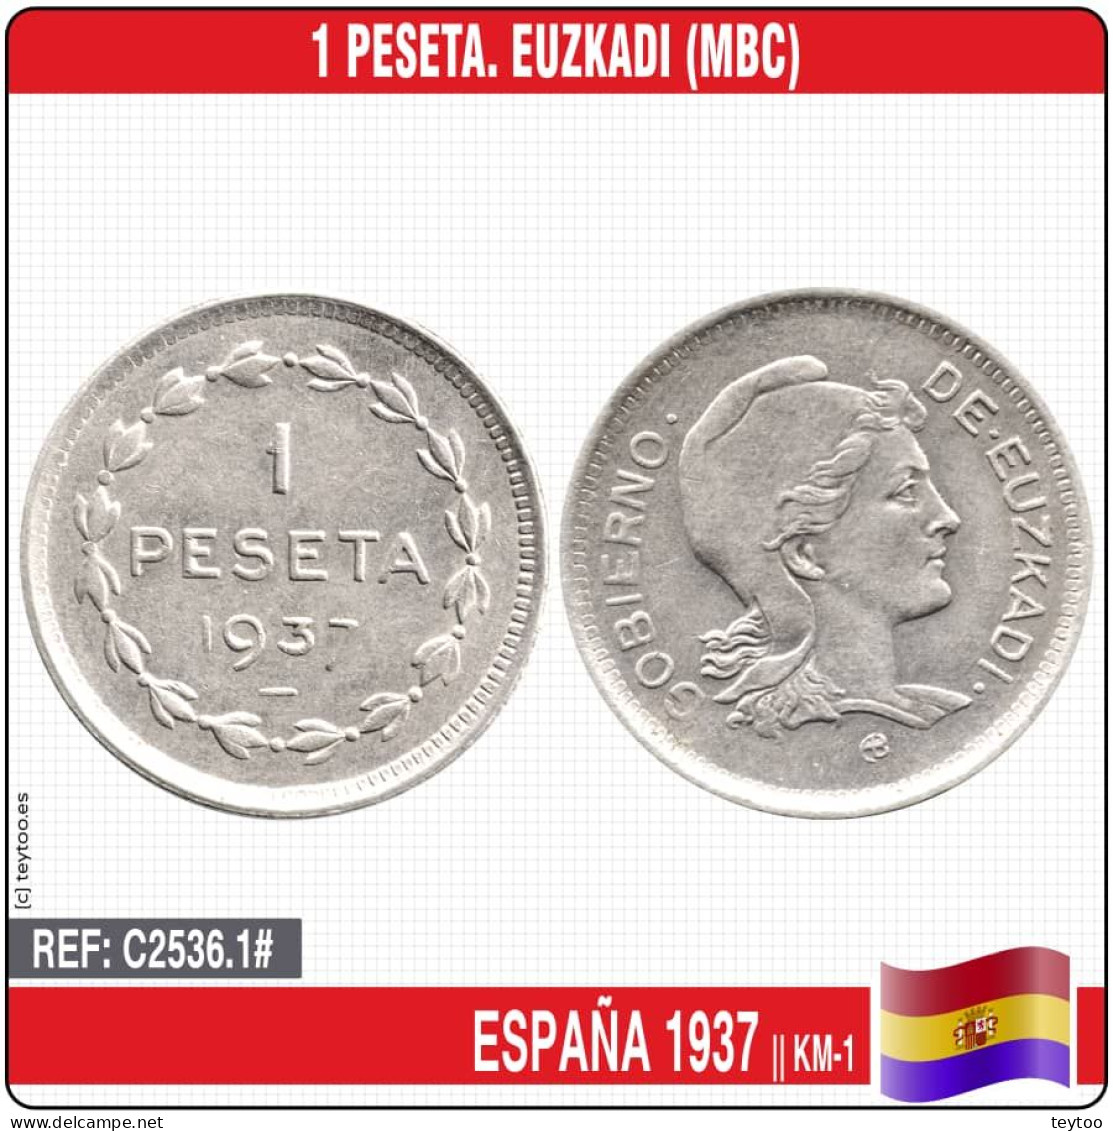 C2536.1# España 1937. 1 Peseta. Euzkadi (MBC) KM-1 - Zona Republicana